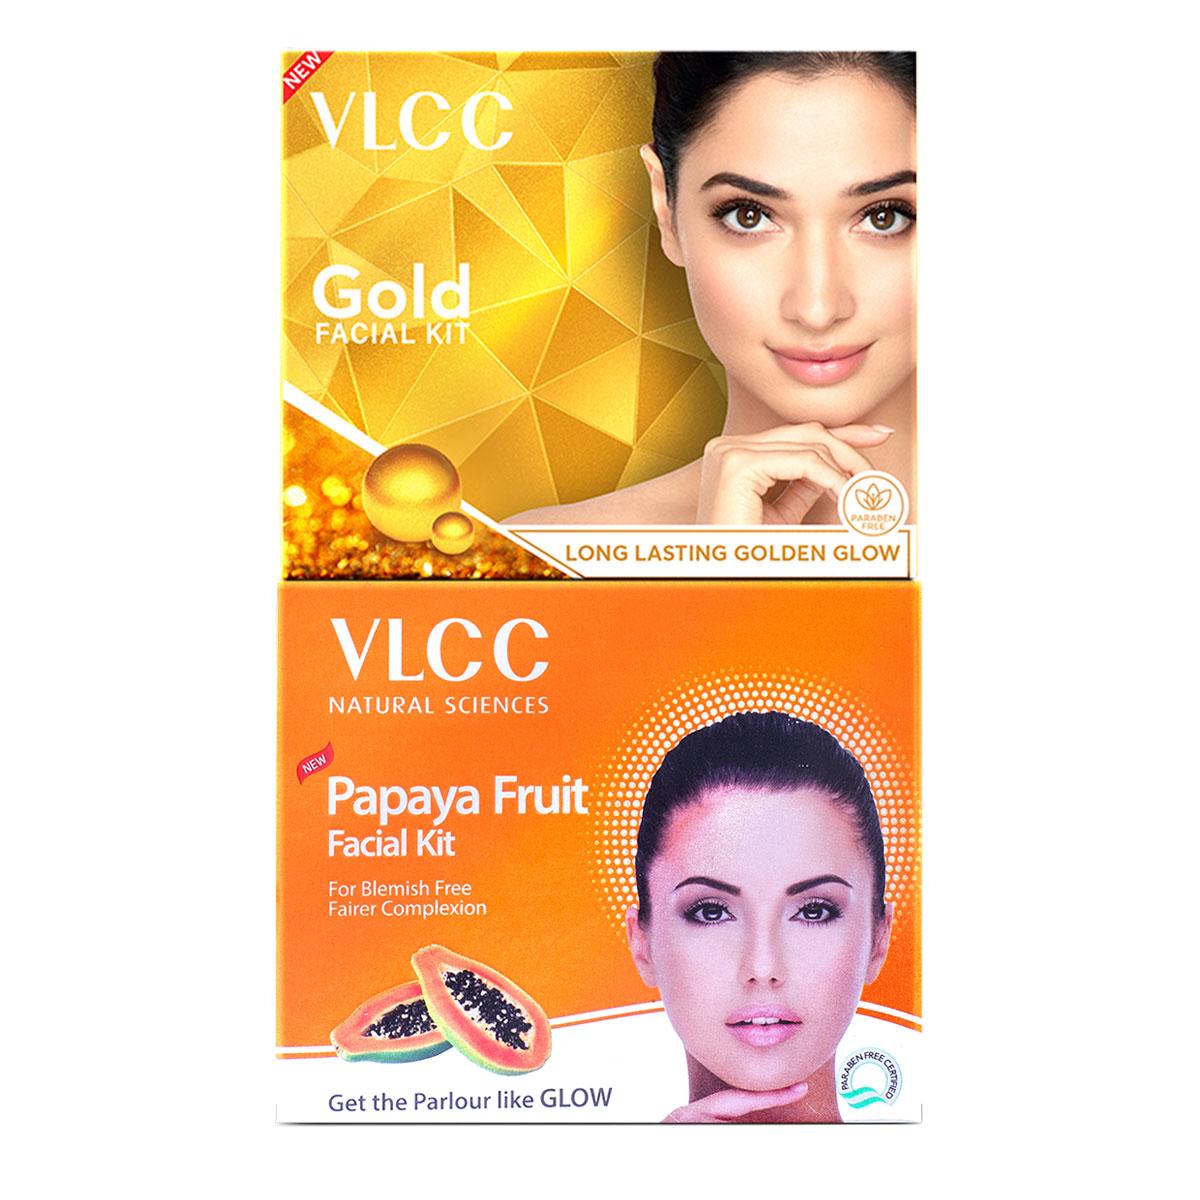 VLCC Papaya Fruit Single Facial Kit & Gold Facial Kit